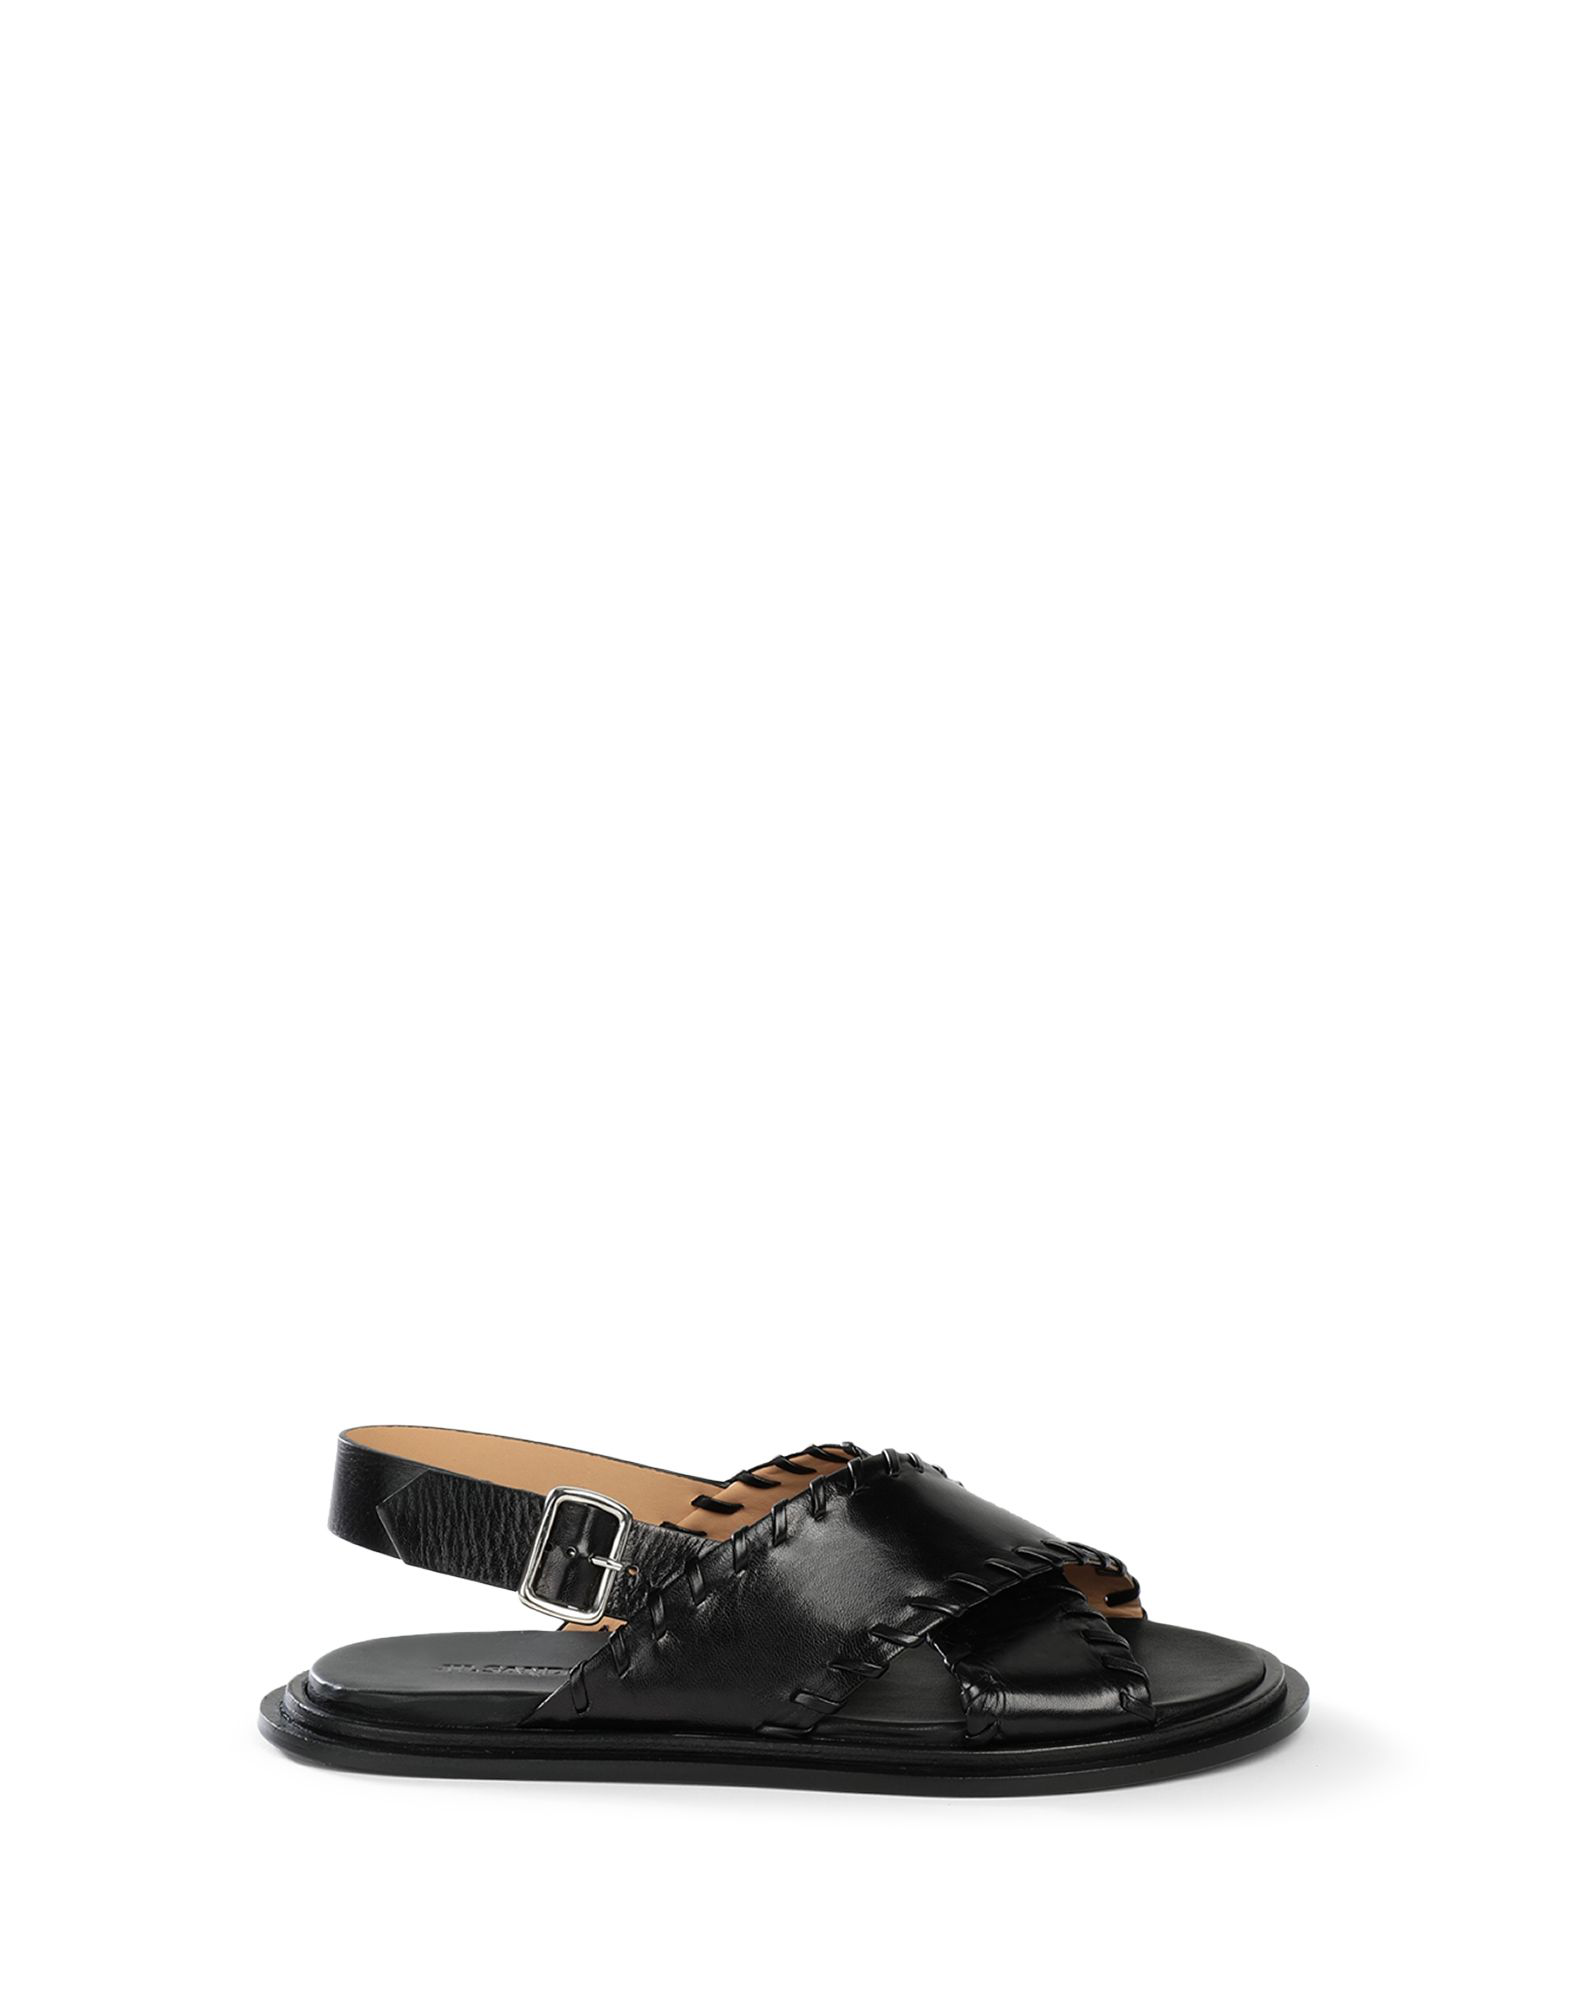 Jil Sander Leather Crossover Sandals In Black | ModeSens